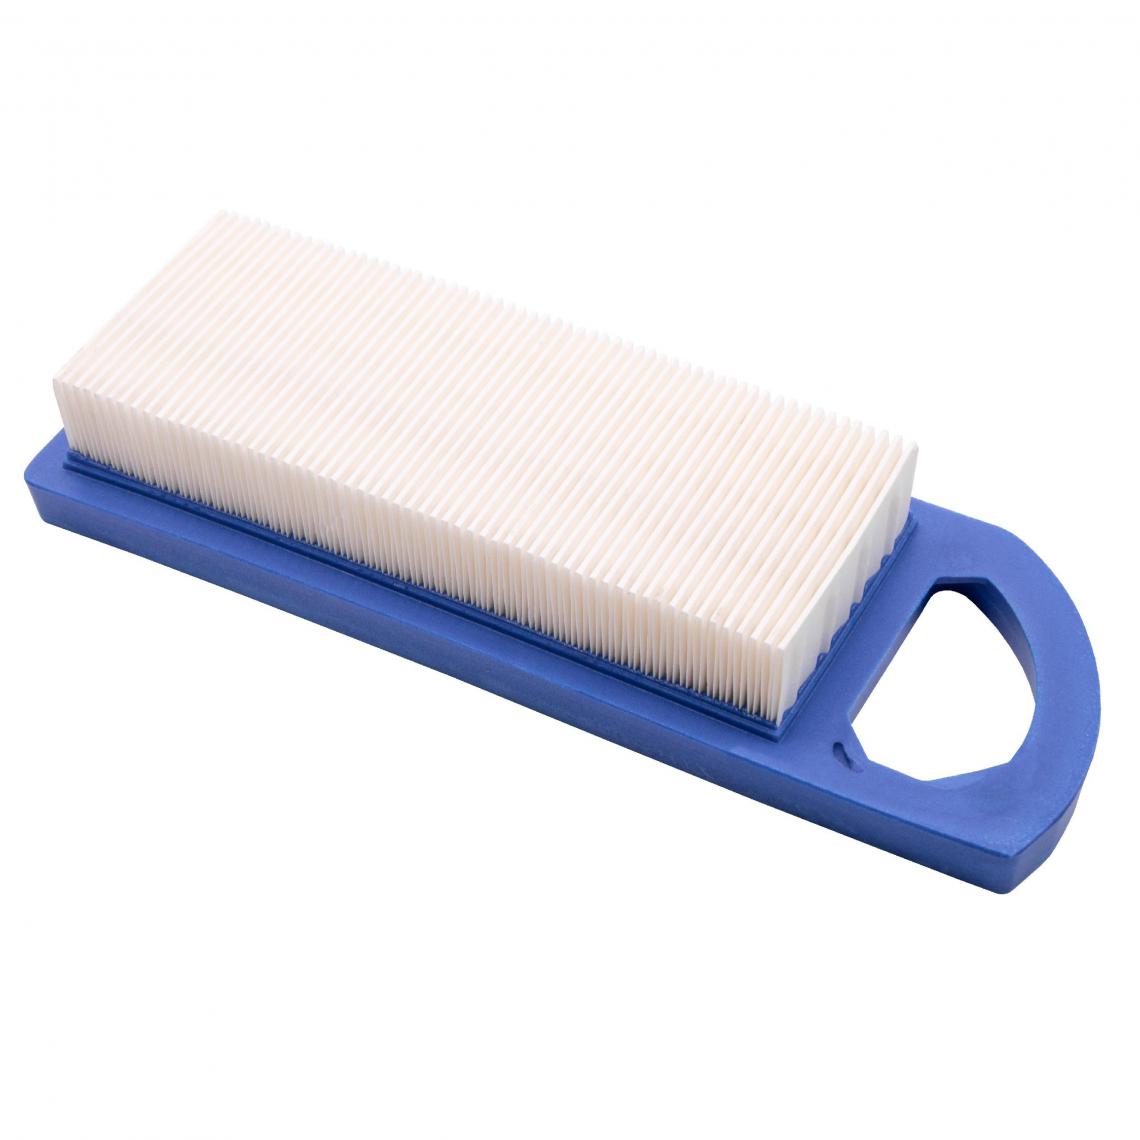 Vhbw - vhbw Filtre à air bleu, blanc compatible avec Briggs & Stratton 284H07, 284H77, 285H77, 286H77, 31E707, 31E777, 31F777, 31G777 tondeuse à gazon - Accessoires tondeuses